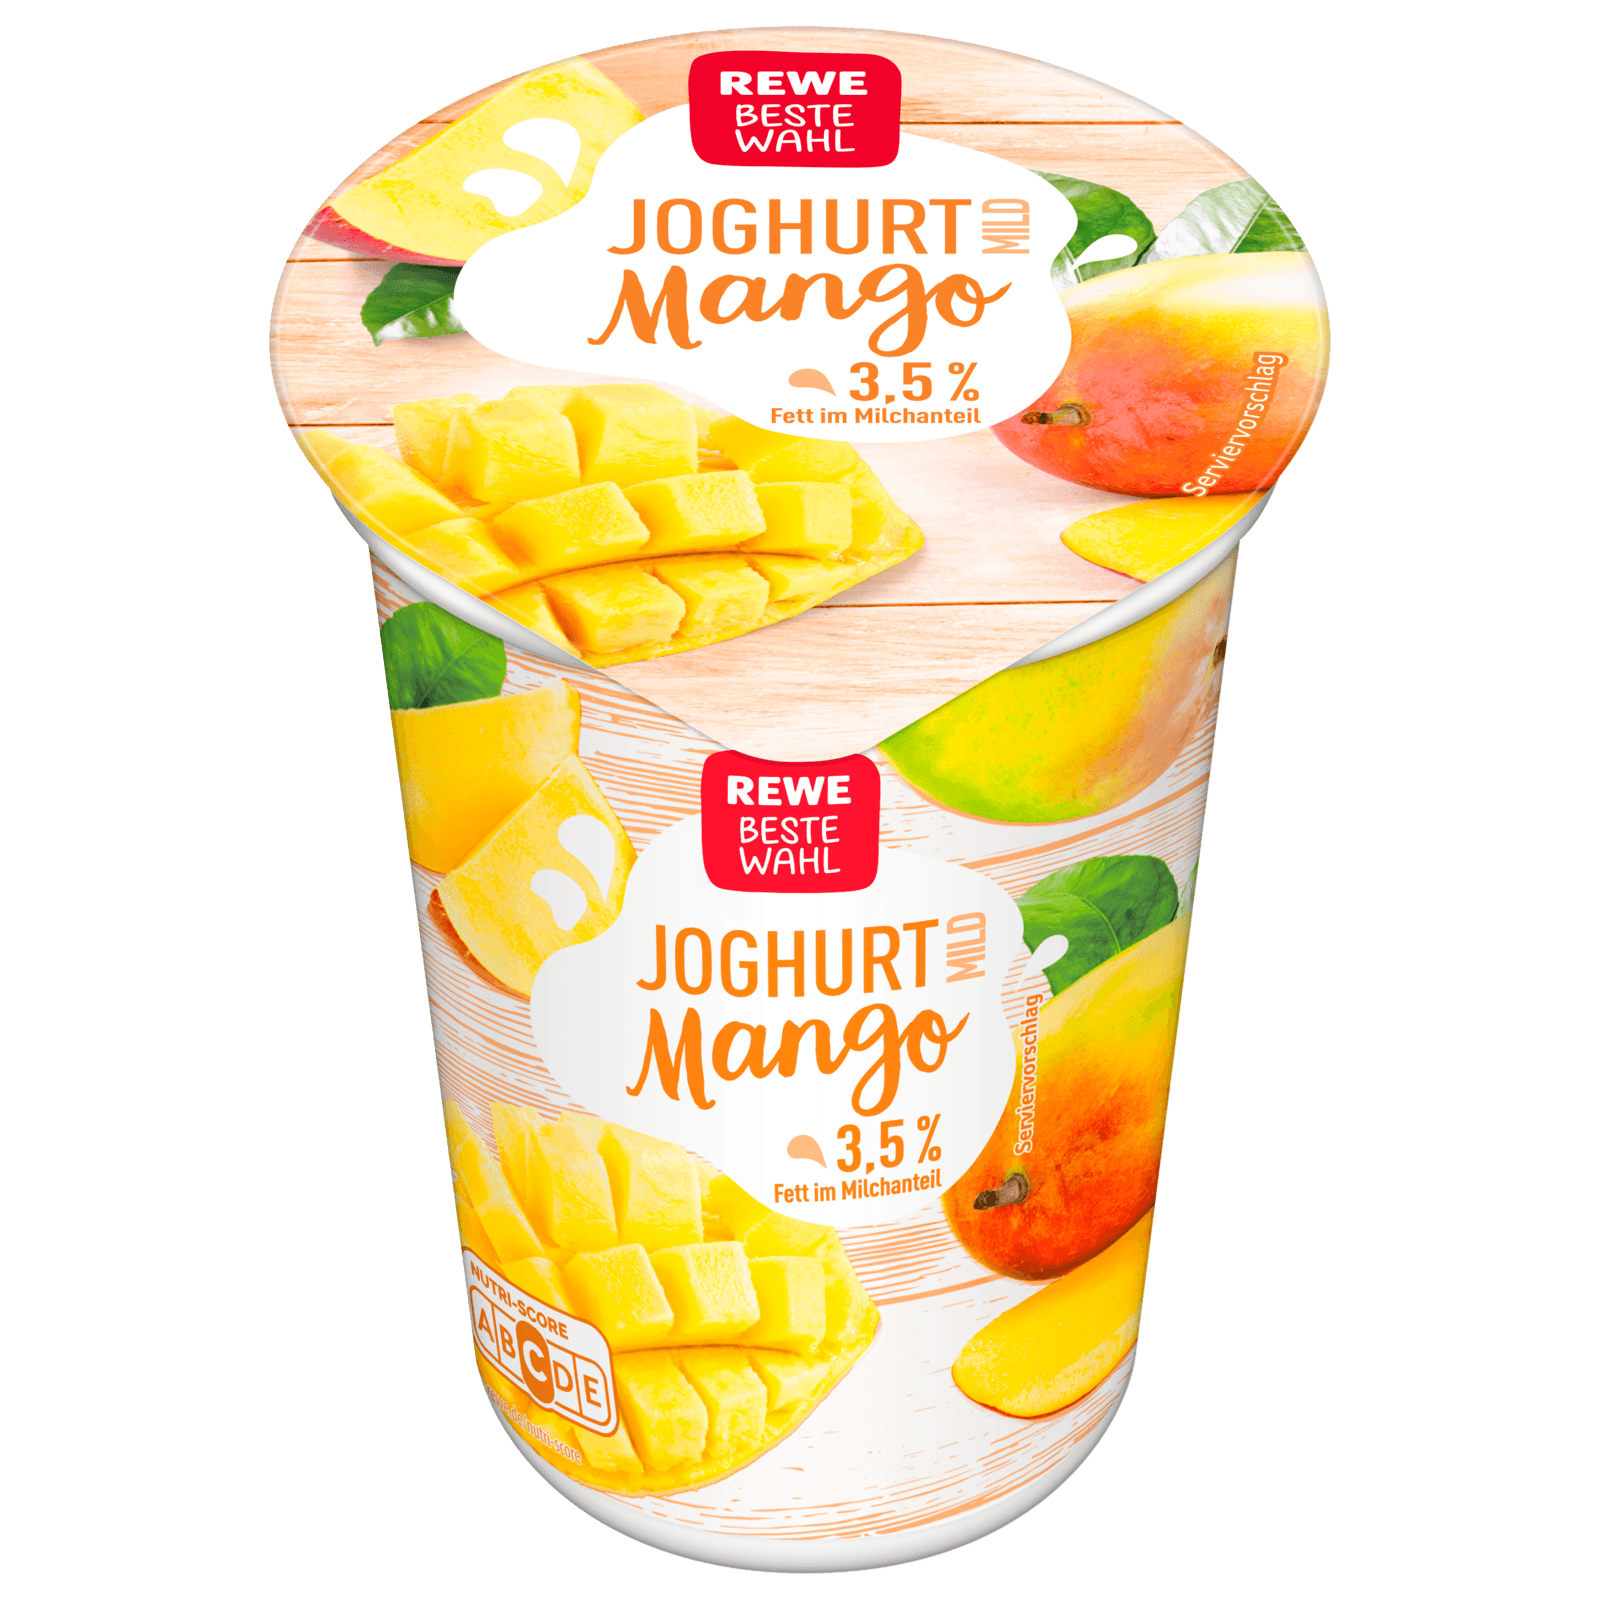 REWE Beste Wahl Joghurt mild Mango 250g  für 0.69 EUR